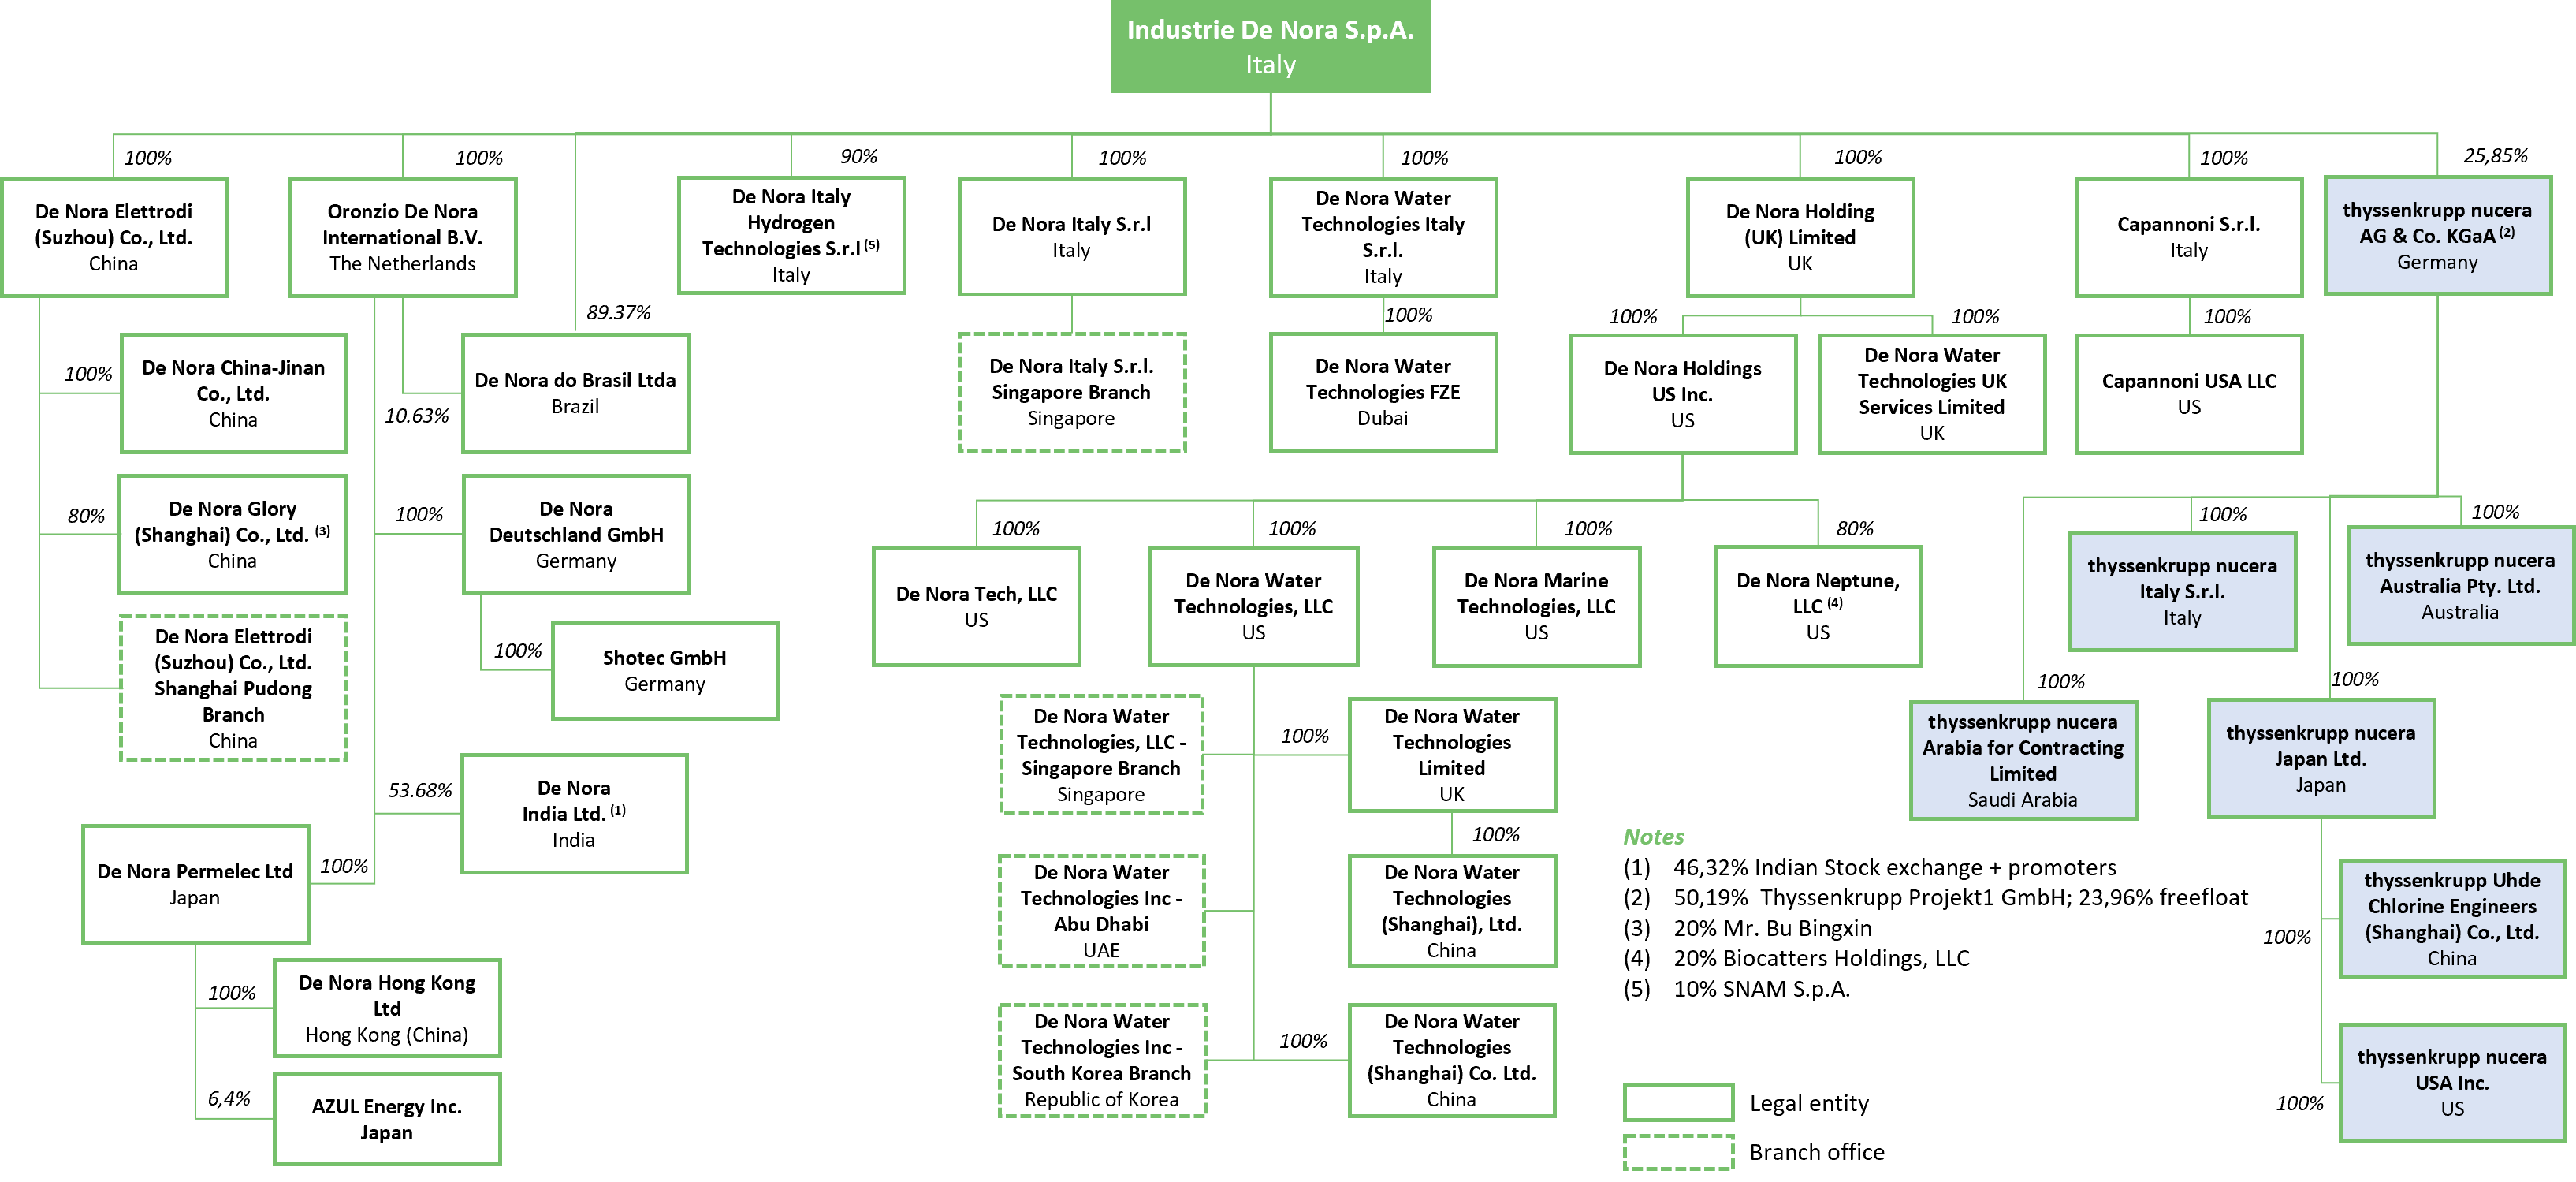 corporate organization chart